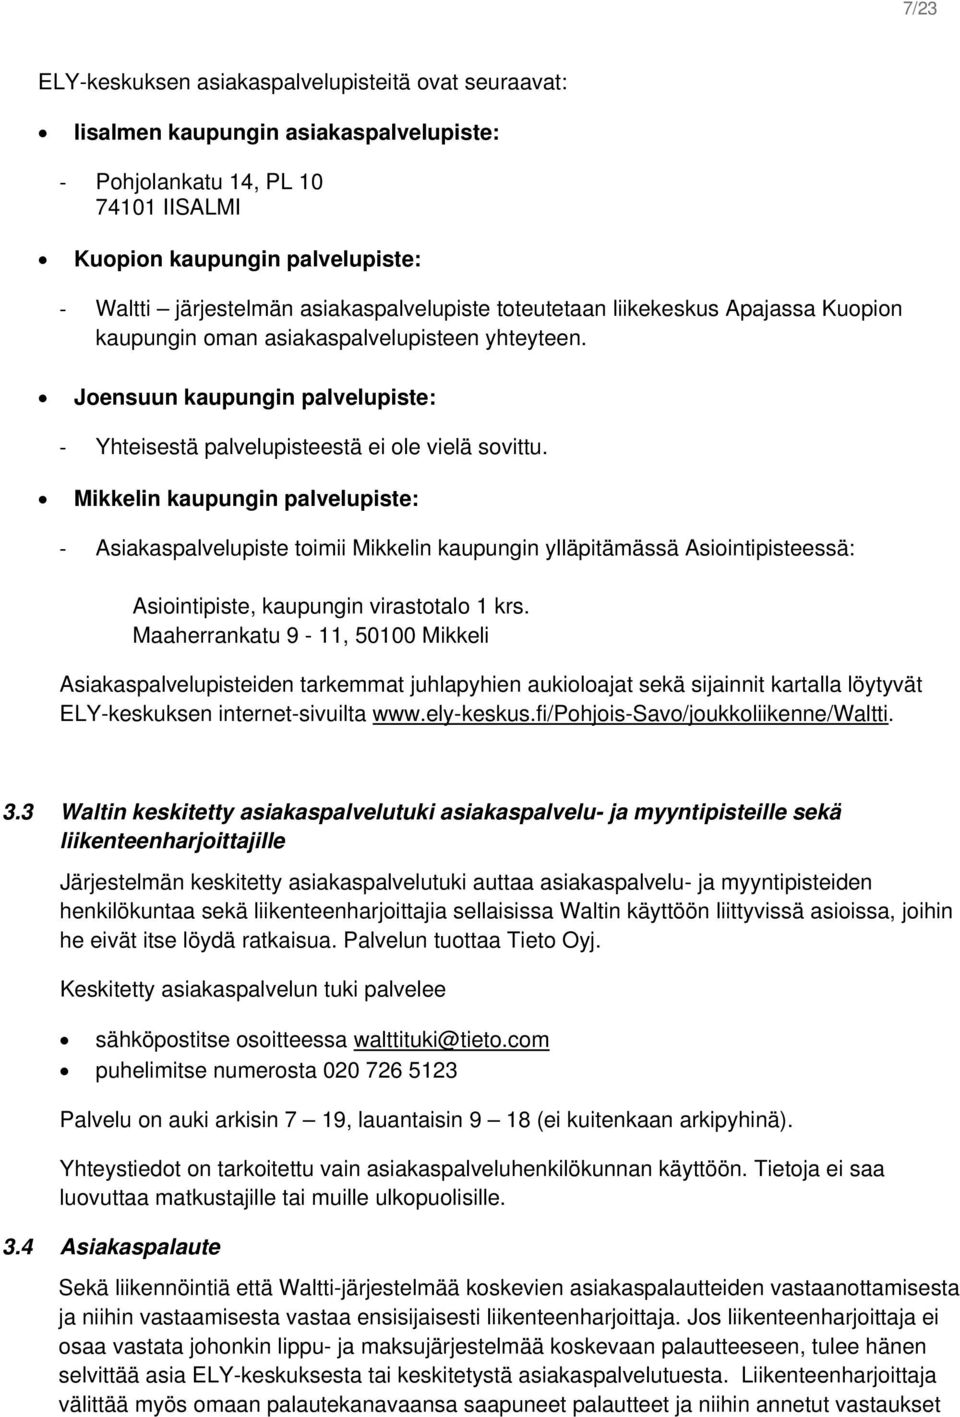 Mikkelin kaupungin palvelupiste: Asiakaspalvelupiste toimii Mikkelin kaupungin ylläpitämässä Asiointipisteessä: Asiointipiste, kaupungin virastotalo 1 krs.